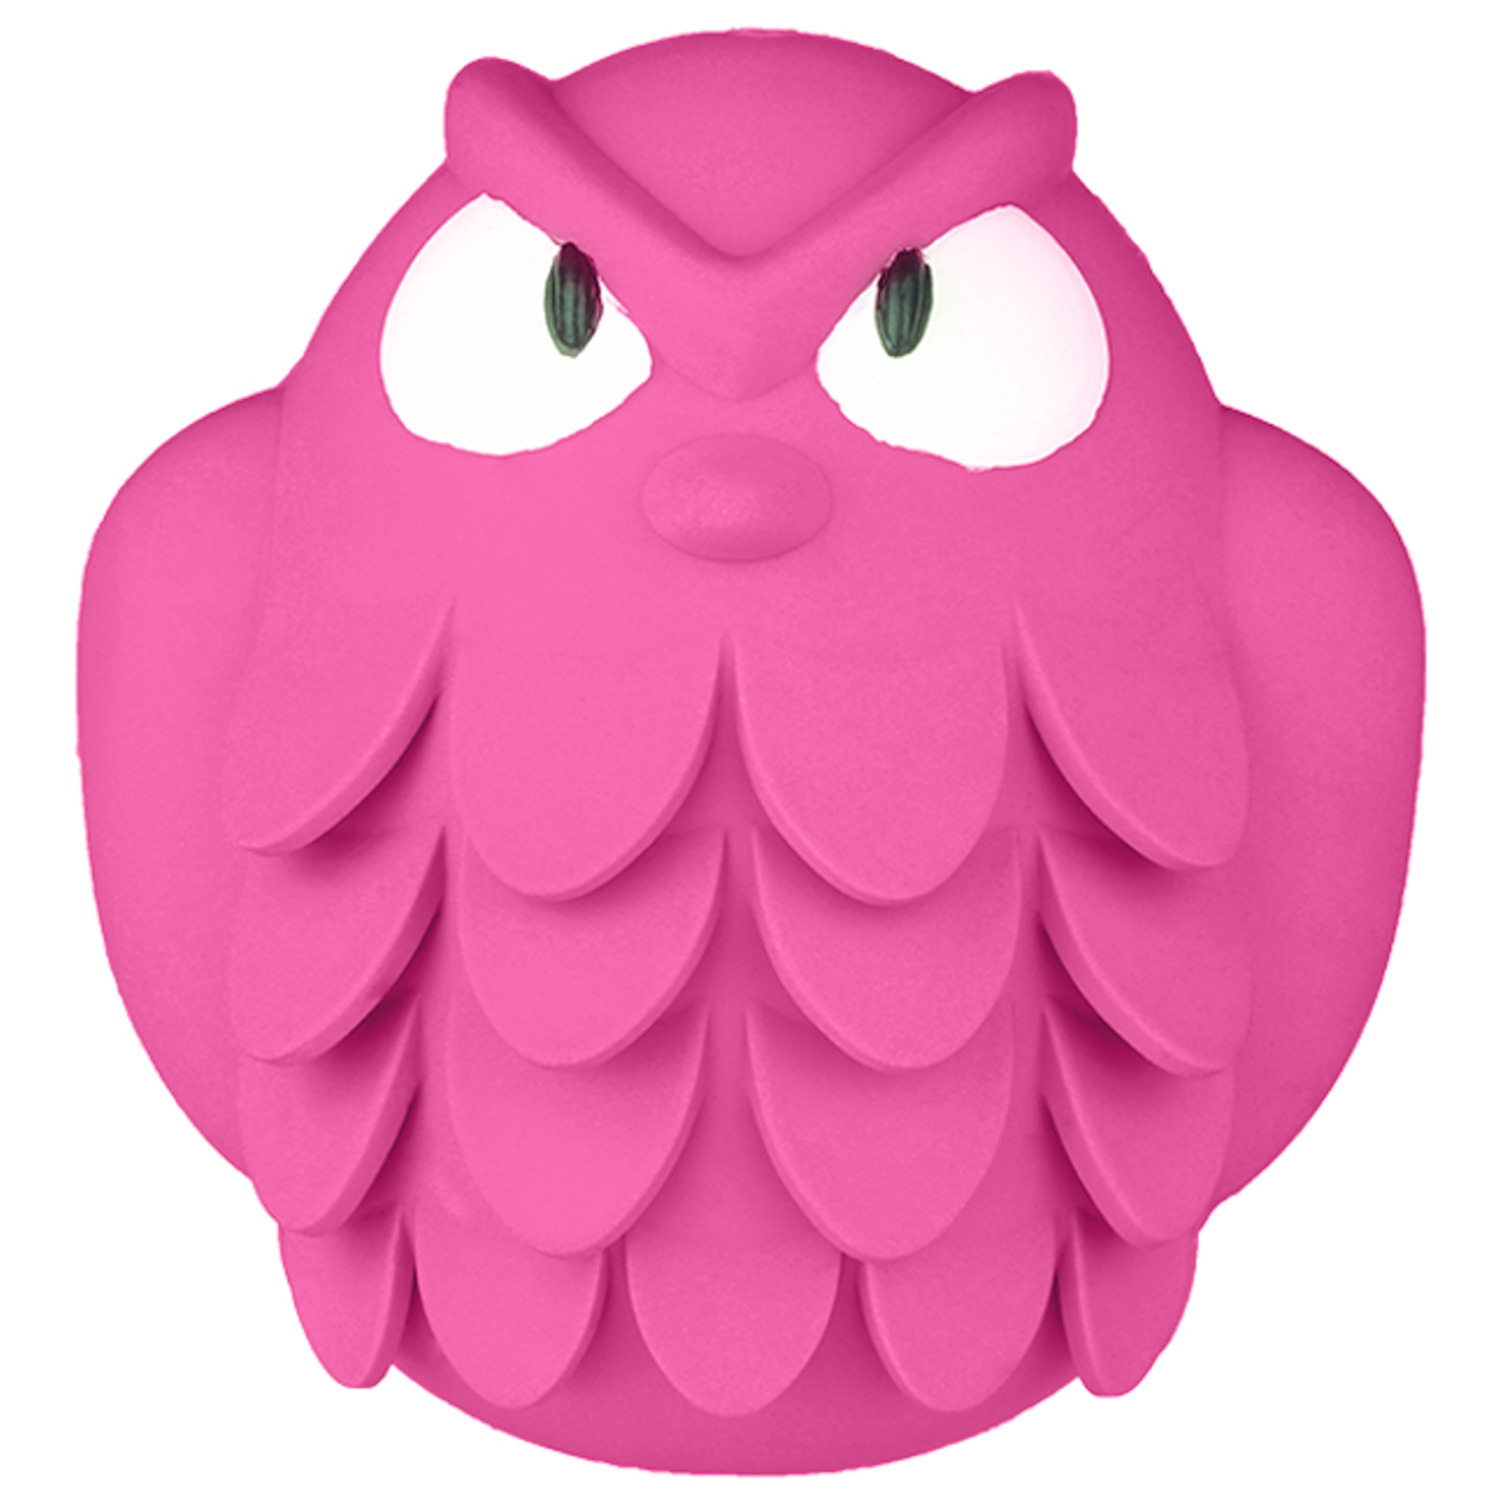 Mr.Kranch Mr.Kranch игрушка "Сова" для собак, с ароматом бекона, розовая (13 см)